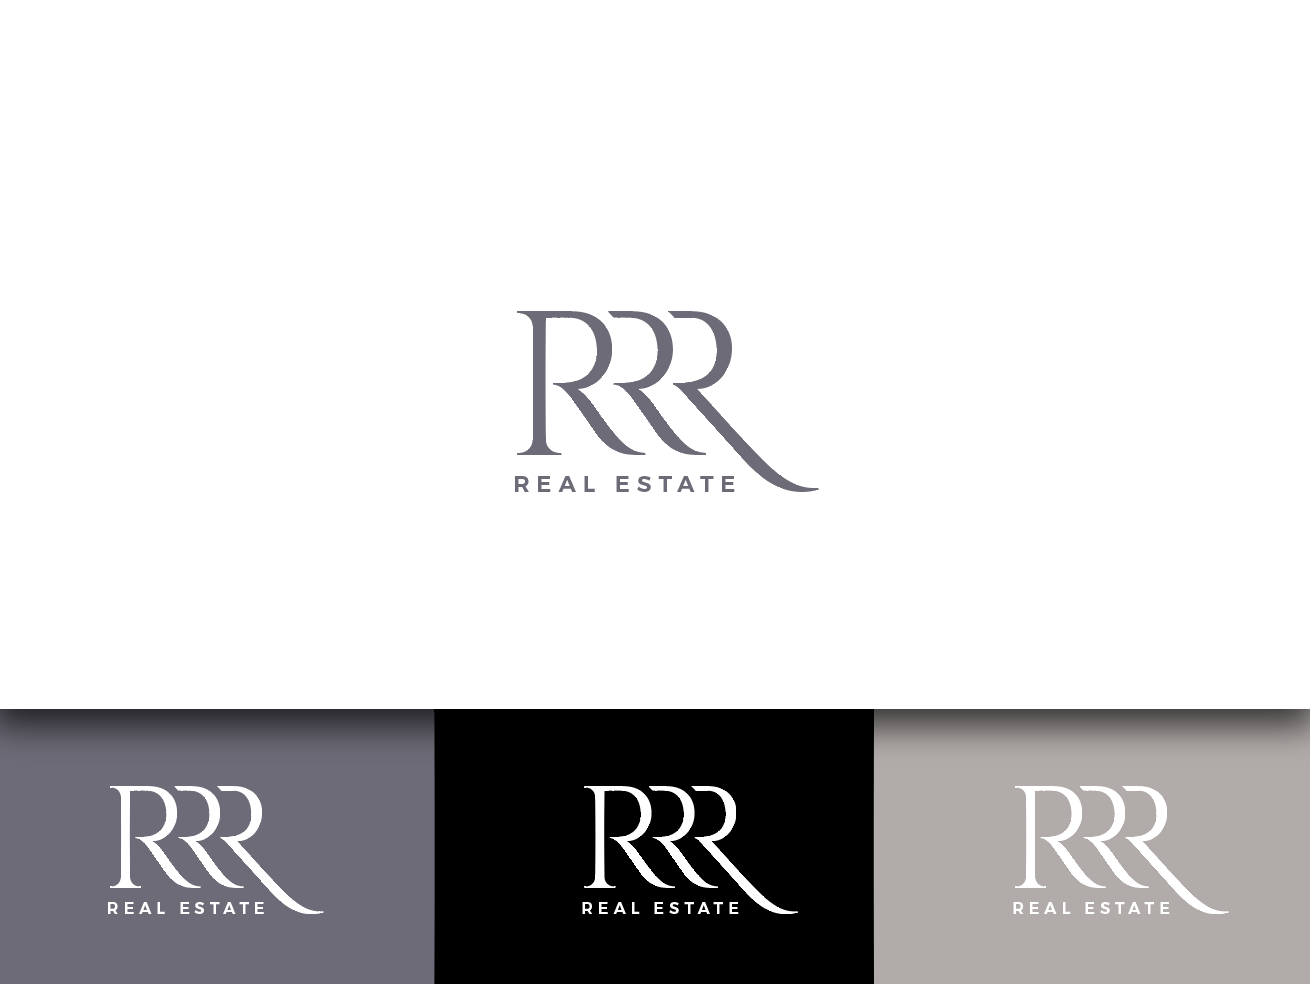 Rrr Logo - Elegant, Conservative, Real Estate Logo Design for RRR by wonderland ...